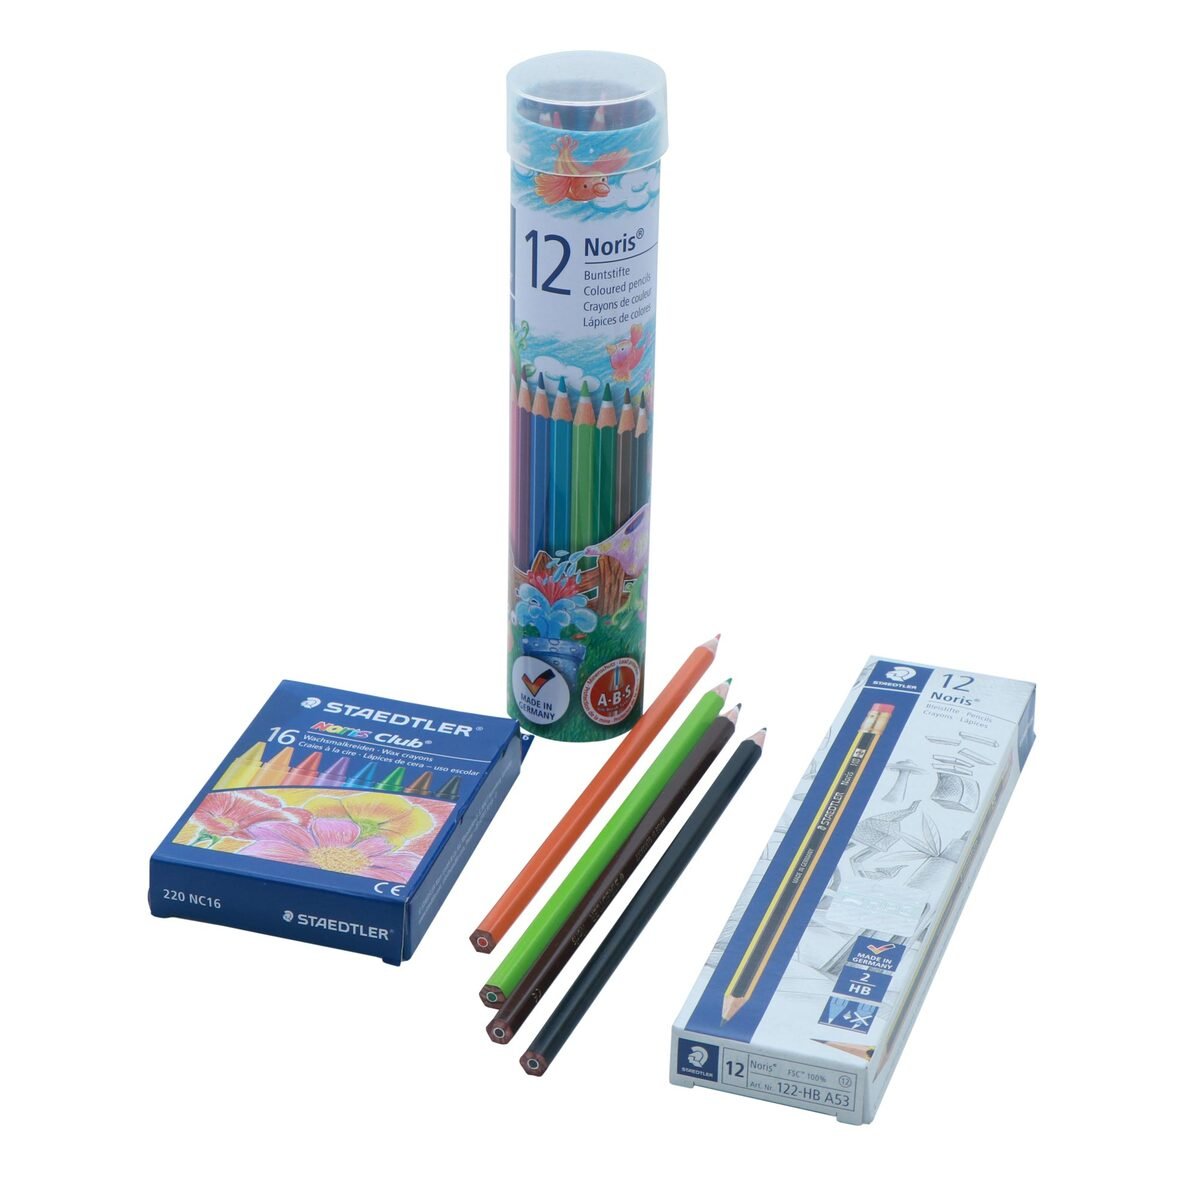 Staedtler Noris Color Pencils 12's + Staedtler Noris 2HB Pencils 12's + Staedtler Noris Club Wax Crayons 16's